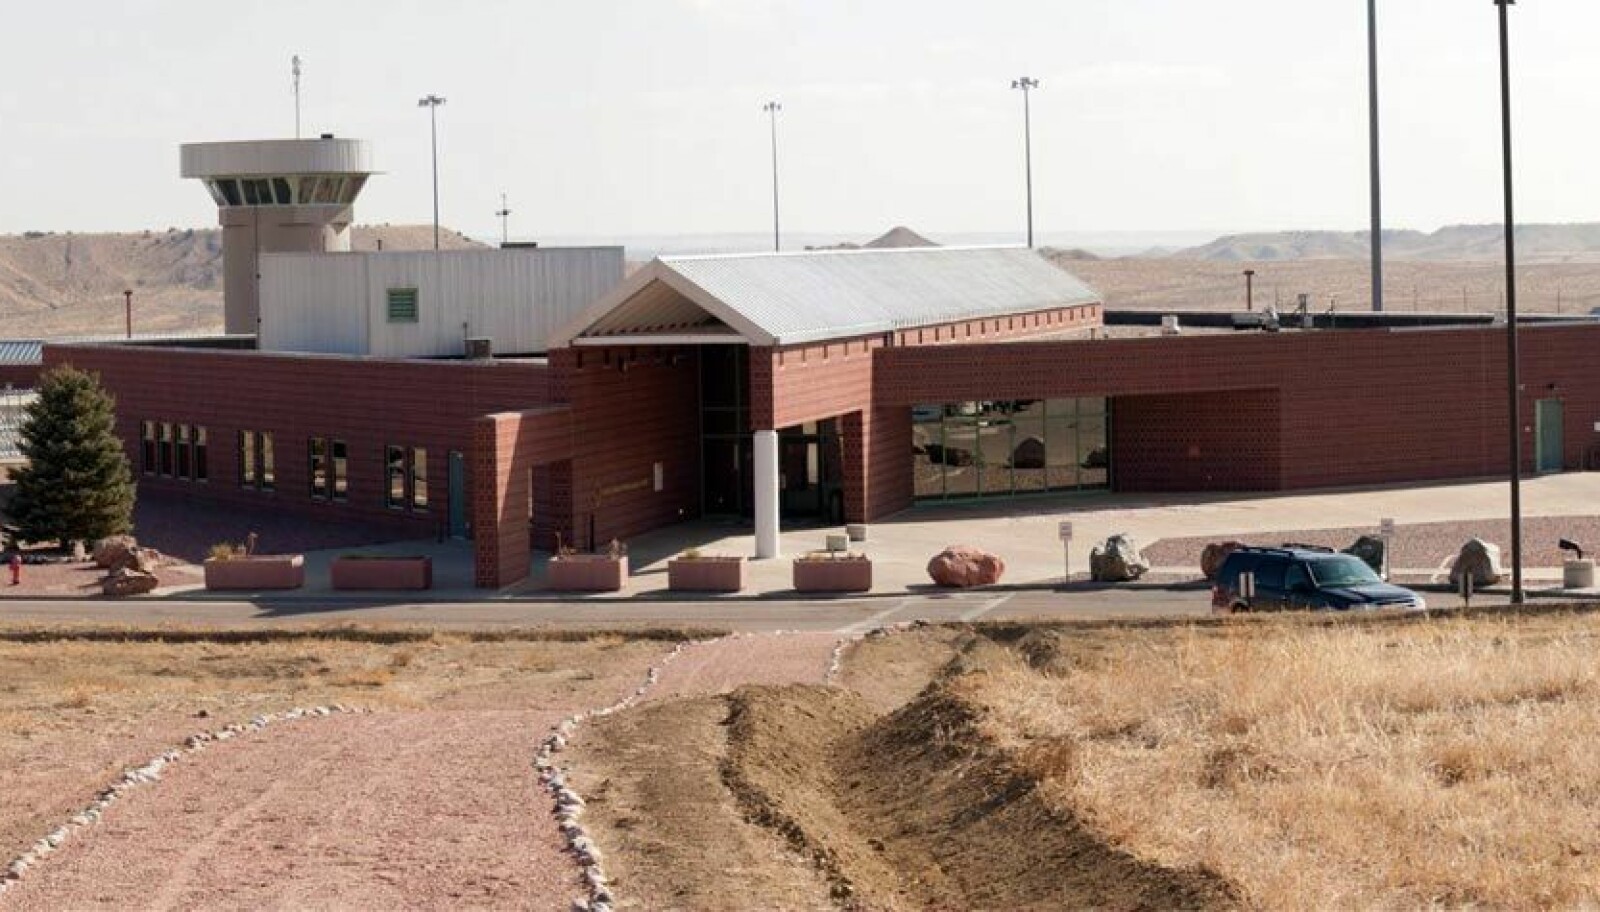 <b>HØYSIKKERHET:</b> ADX supermax prison i Florence, Colorado, blir regnet som et av de strengest bevoktede og har noen av verdens verste fanger.